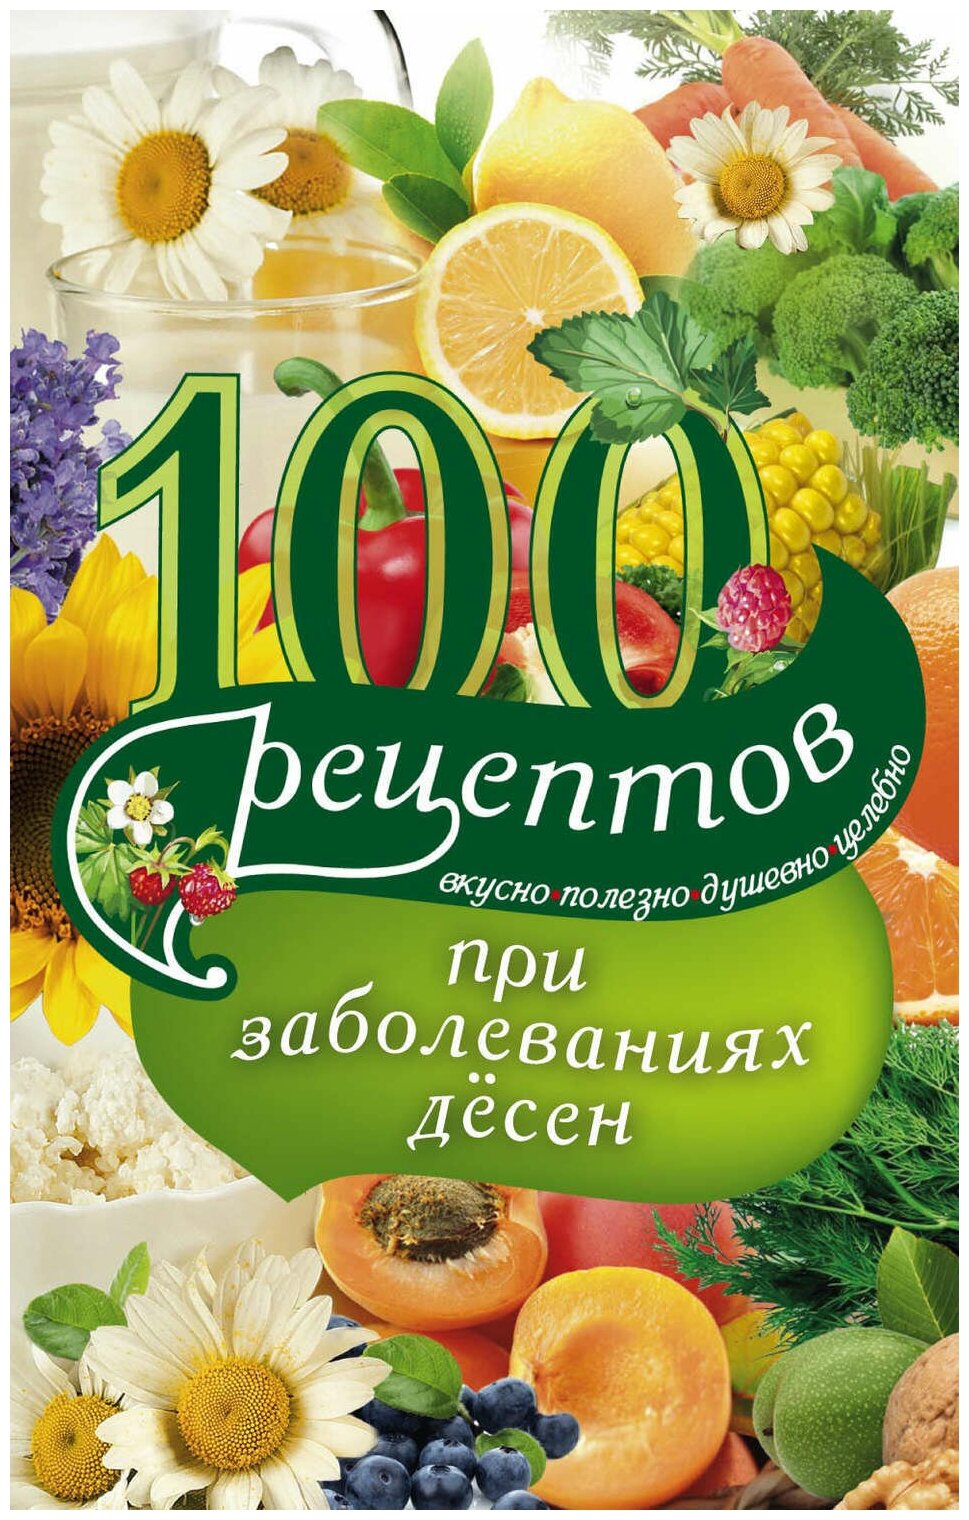 100 рецептов при заболеваниях десен - фото №1